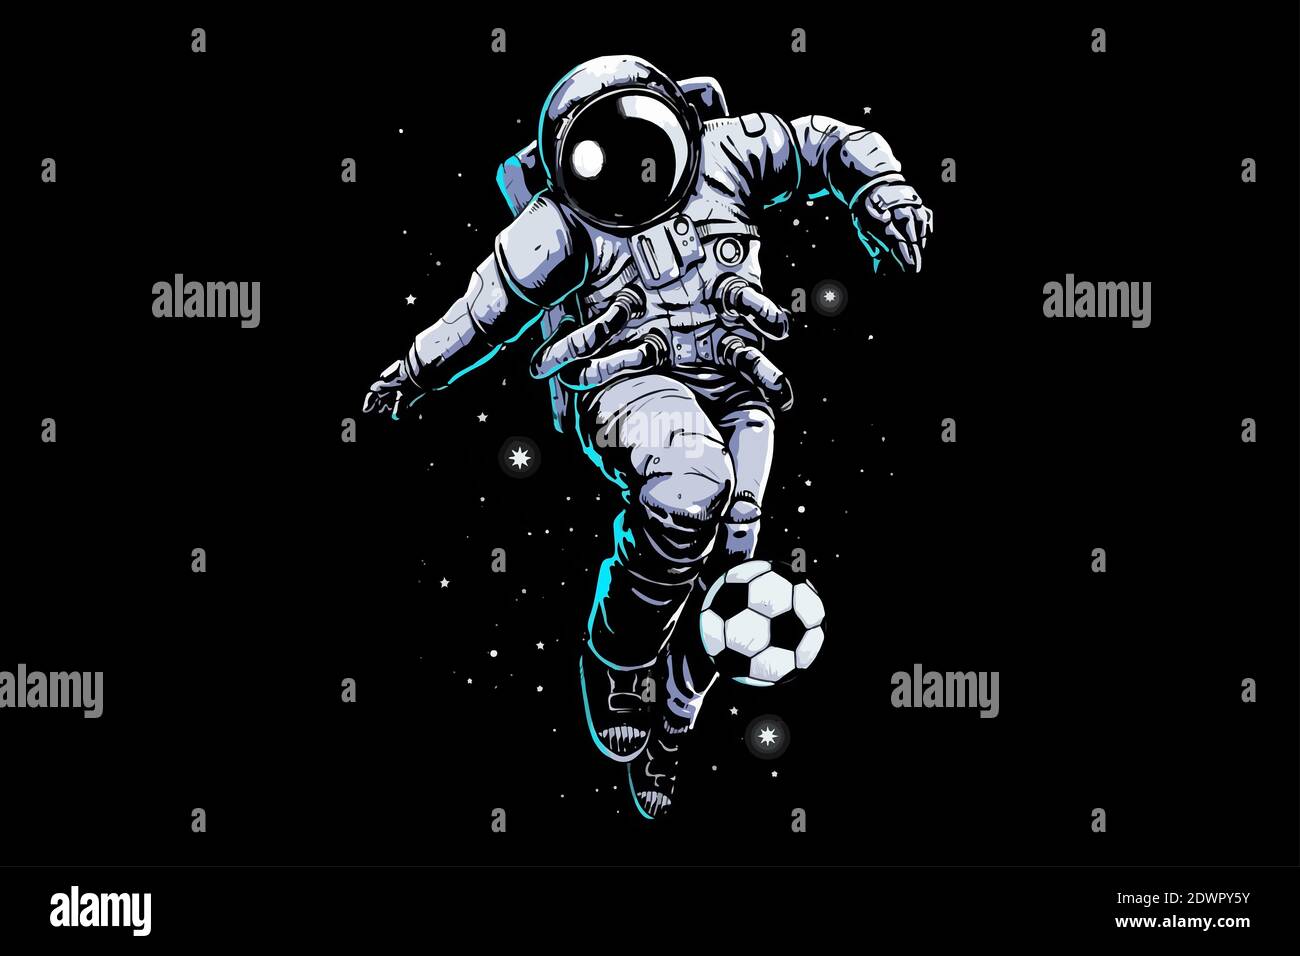 Illustration d'un astronaute jouant au football dans l'espace sur fond sombre Banque D'Images